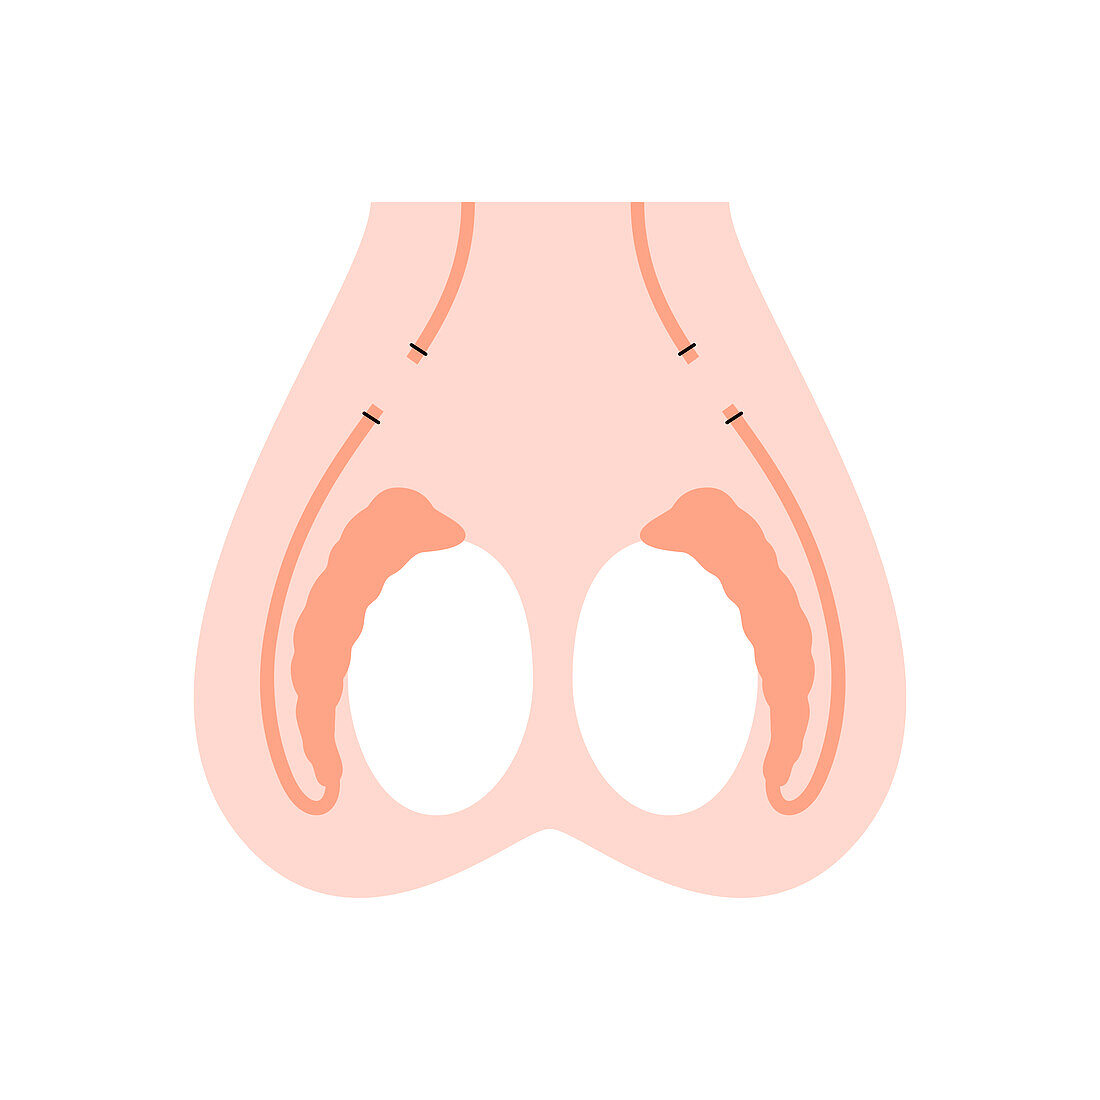 Vasectomy, illustration